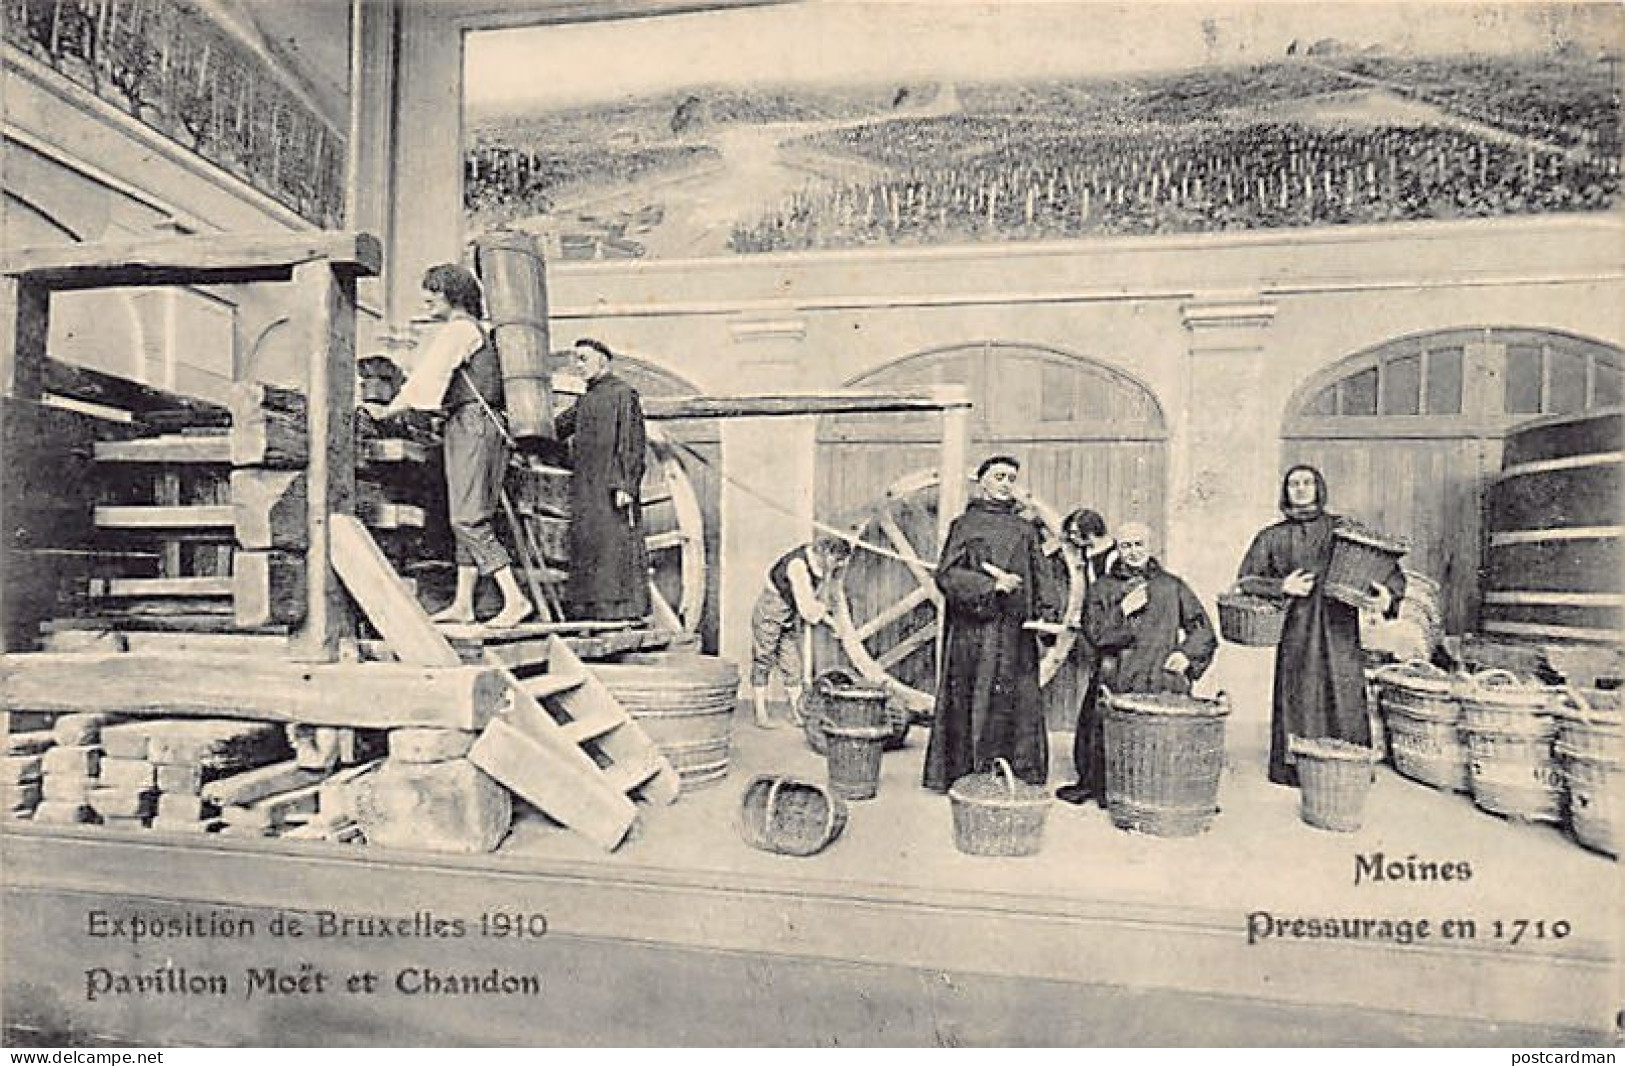 Belgique - Exposition De Bruxelles 1910 - Pavillon Moët Et Chandon - Moines - Pressurage En 1710 - Universal Exhibitions